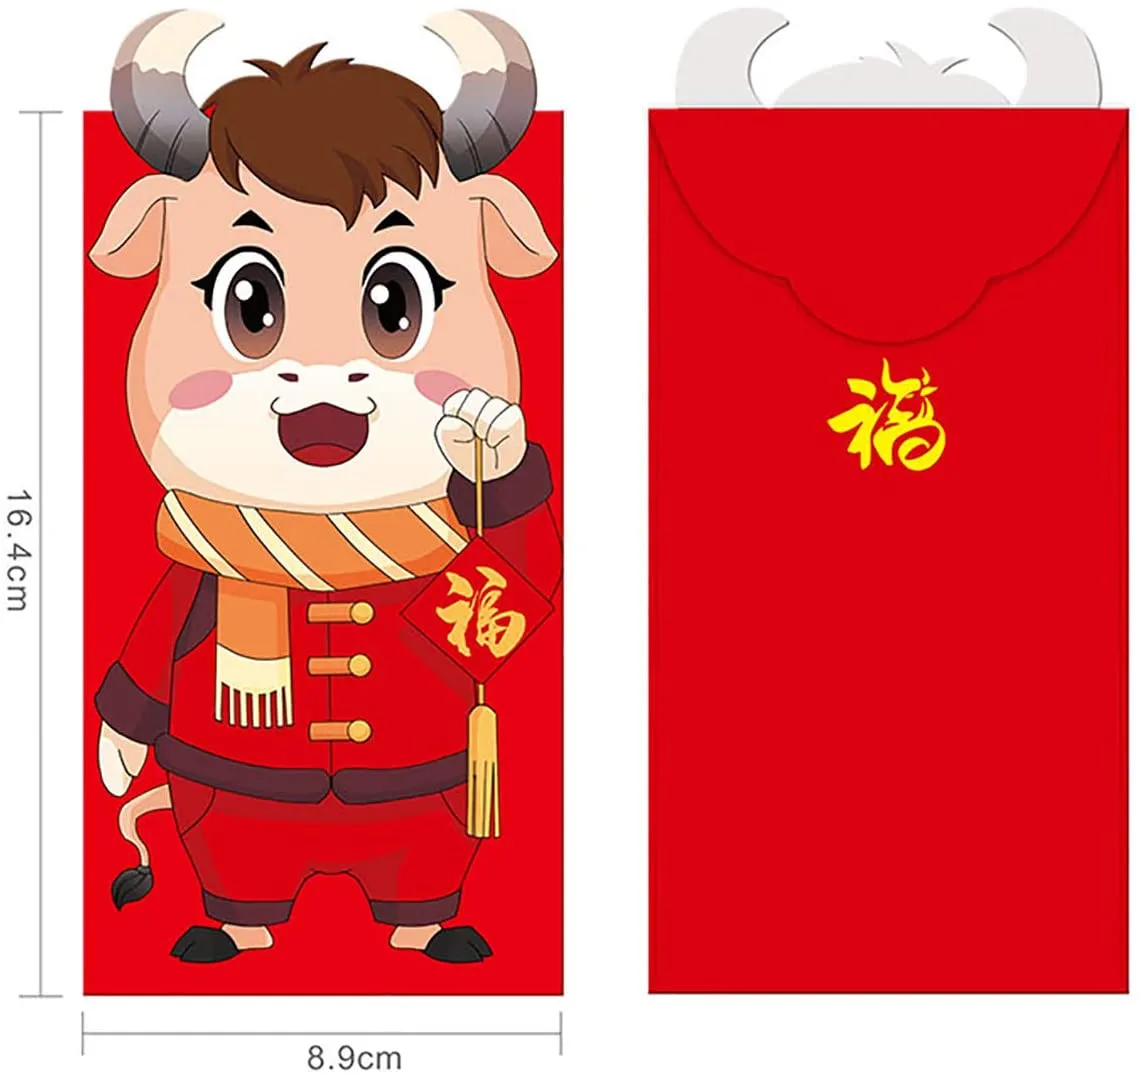 Chinees Nieuwjaar Rode Enveloppen 2021 Chinese Rode Pakketten Gift Money Envelopes Christmas Spring Festival DHL